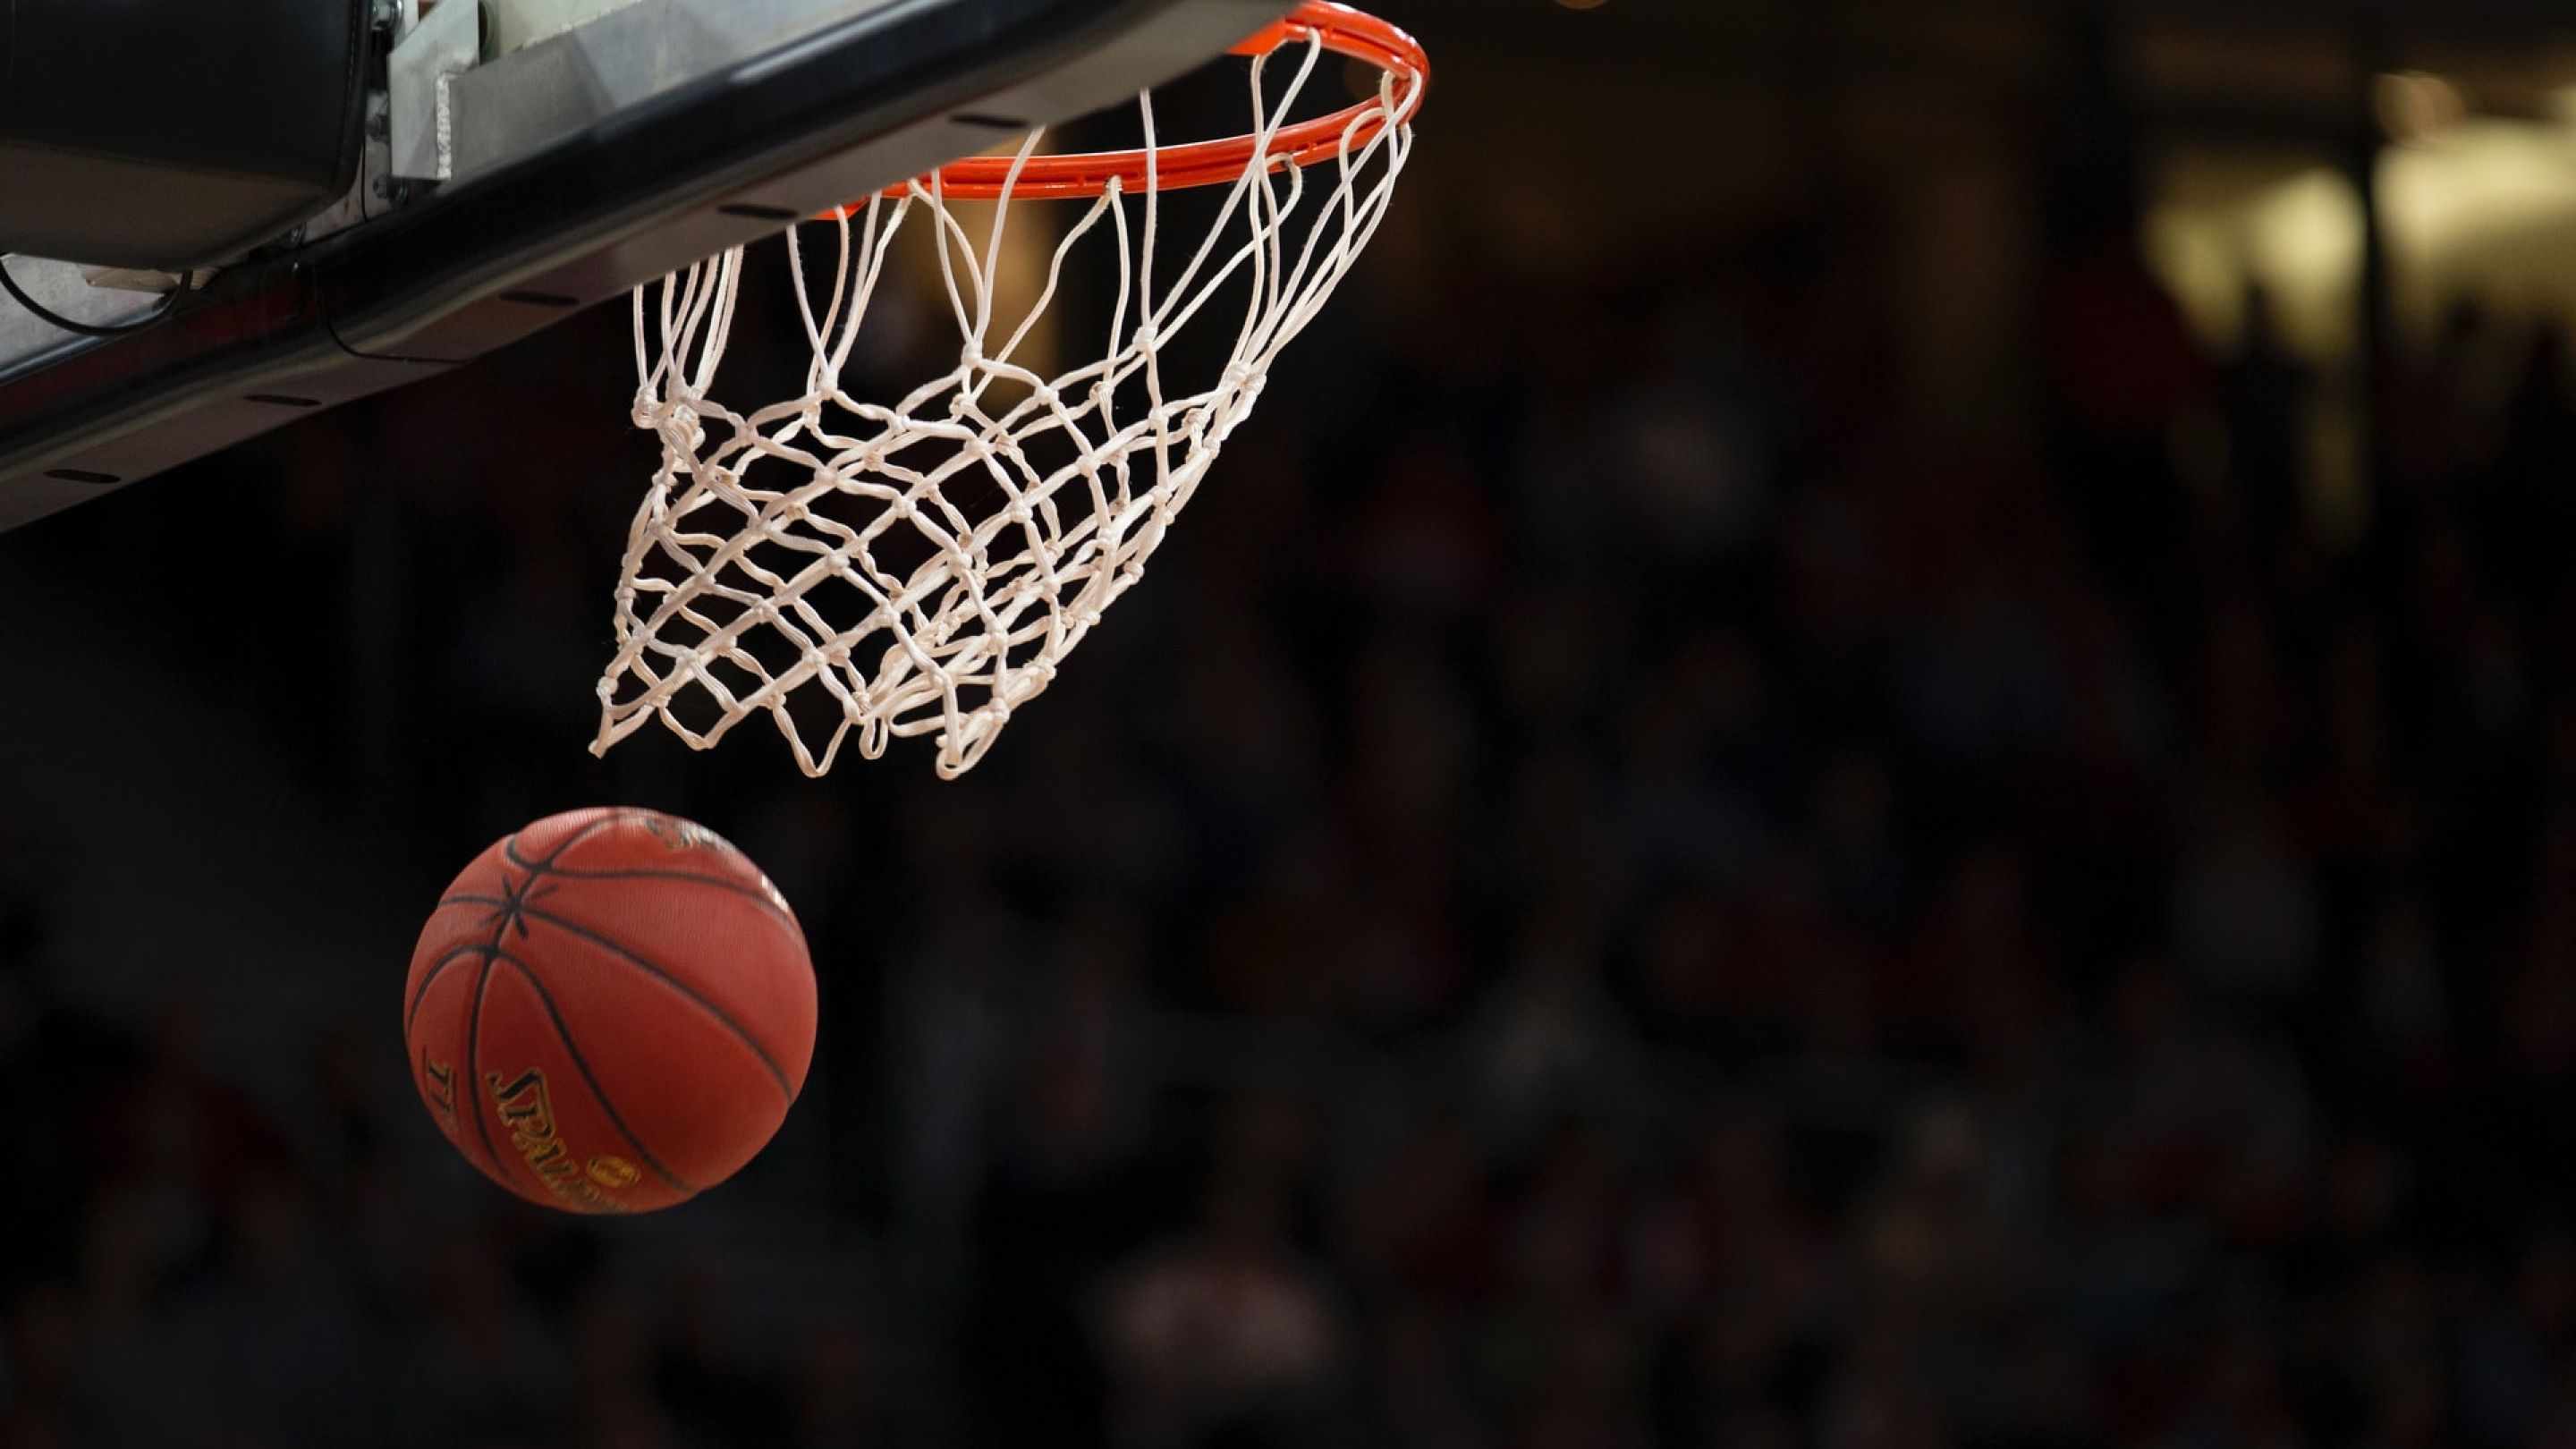 A basketball going through a basketball net. 